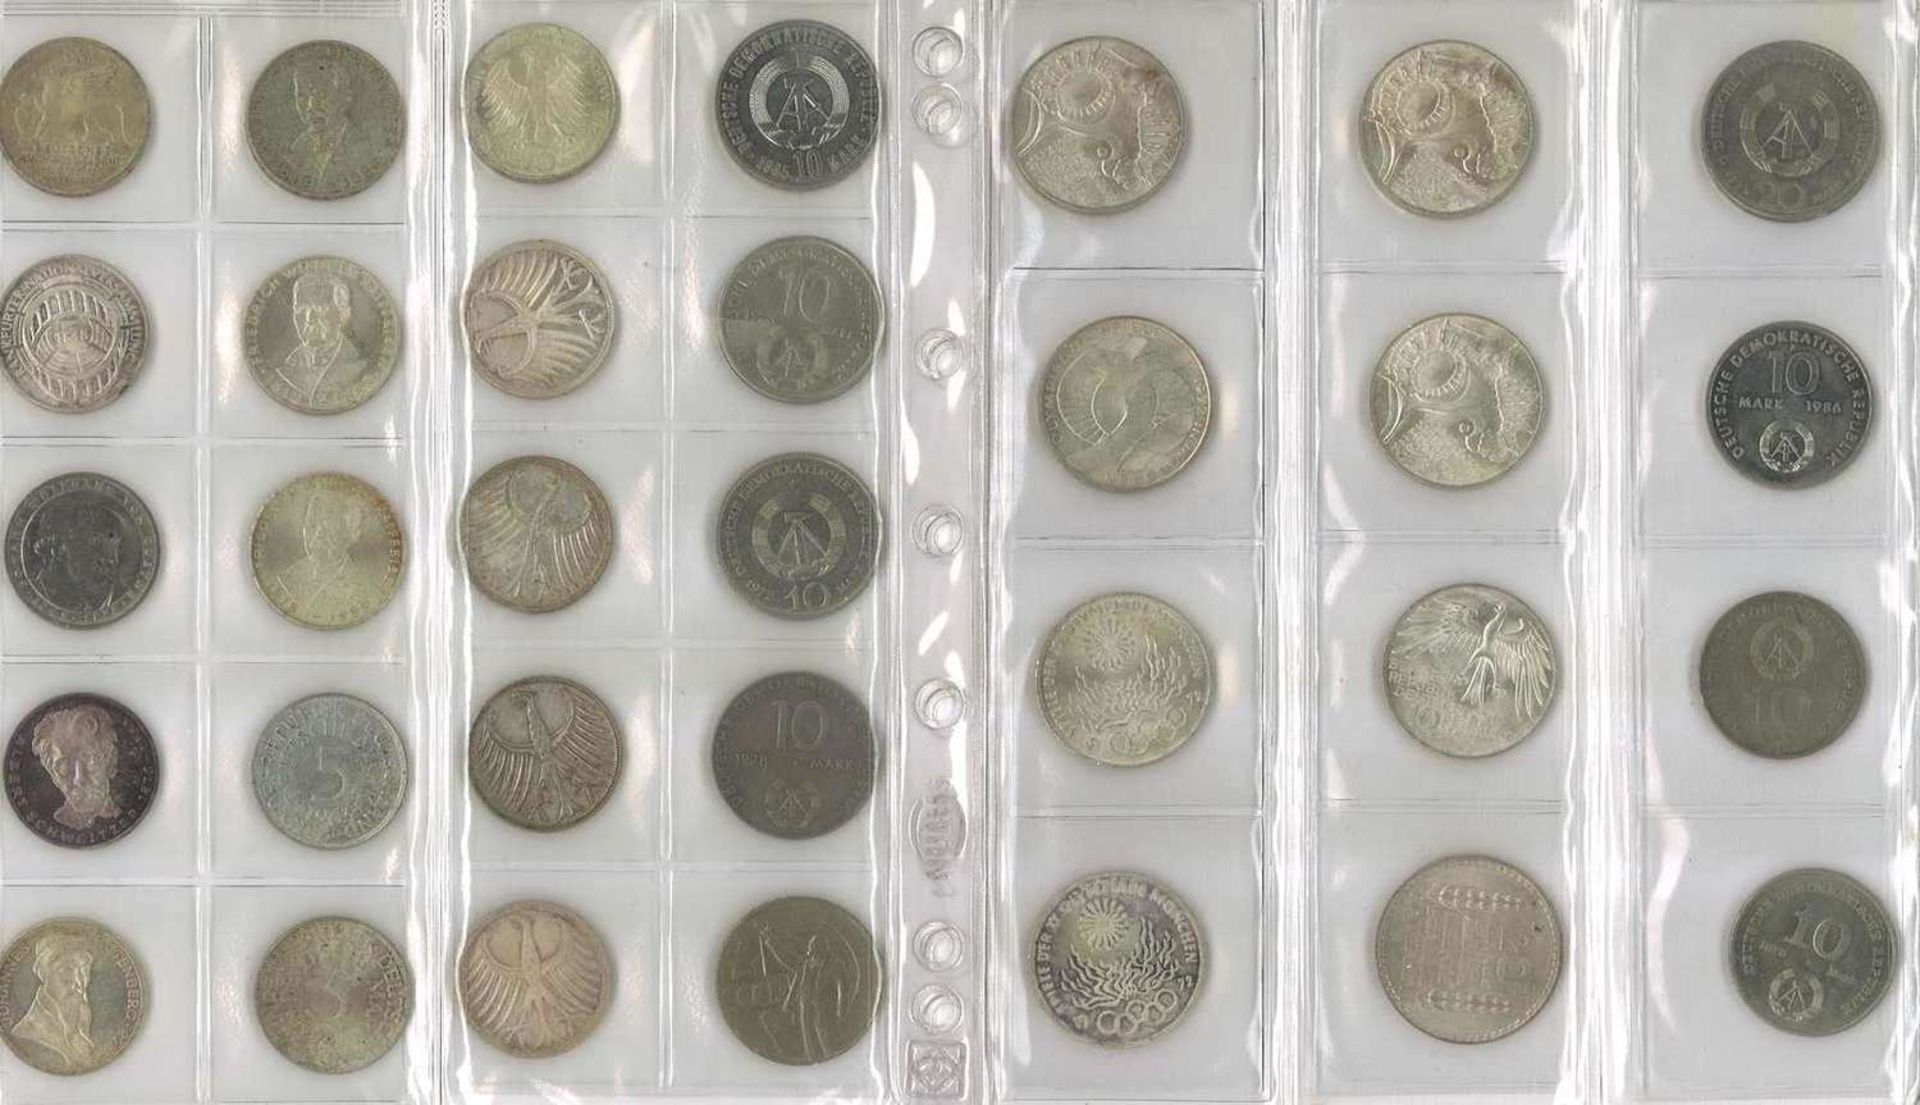 Lot Münzen, meist BRD, dabei 7x 10 Mark, 25x 5 Mark, 13x 2 Mark, 35x 1 Mark, 37x 50 Pfennig. Nomin